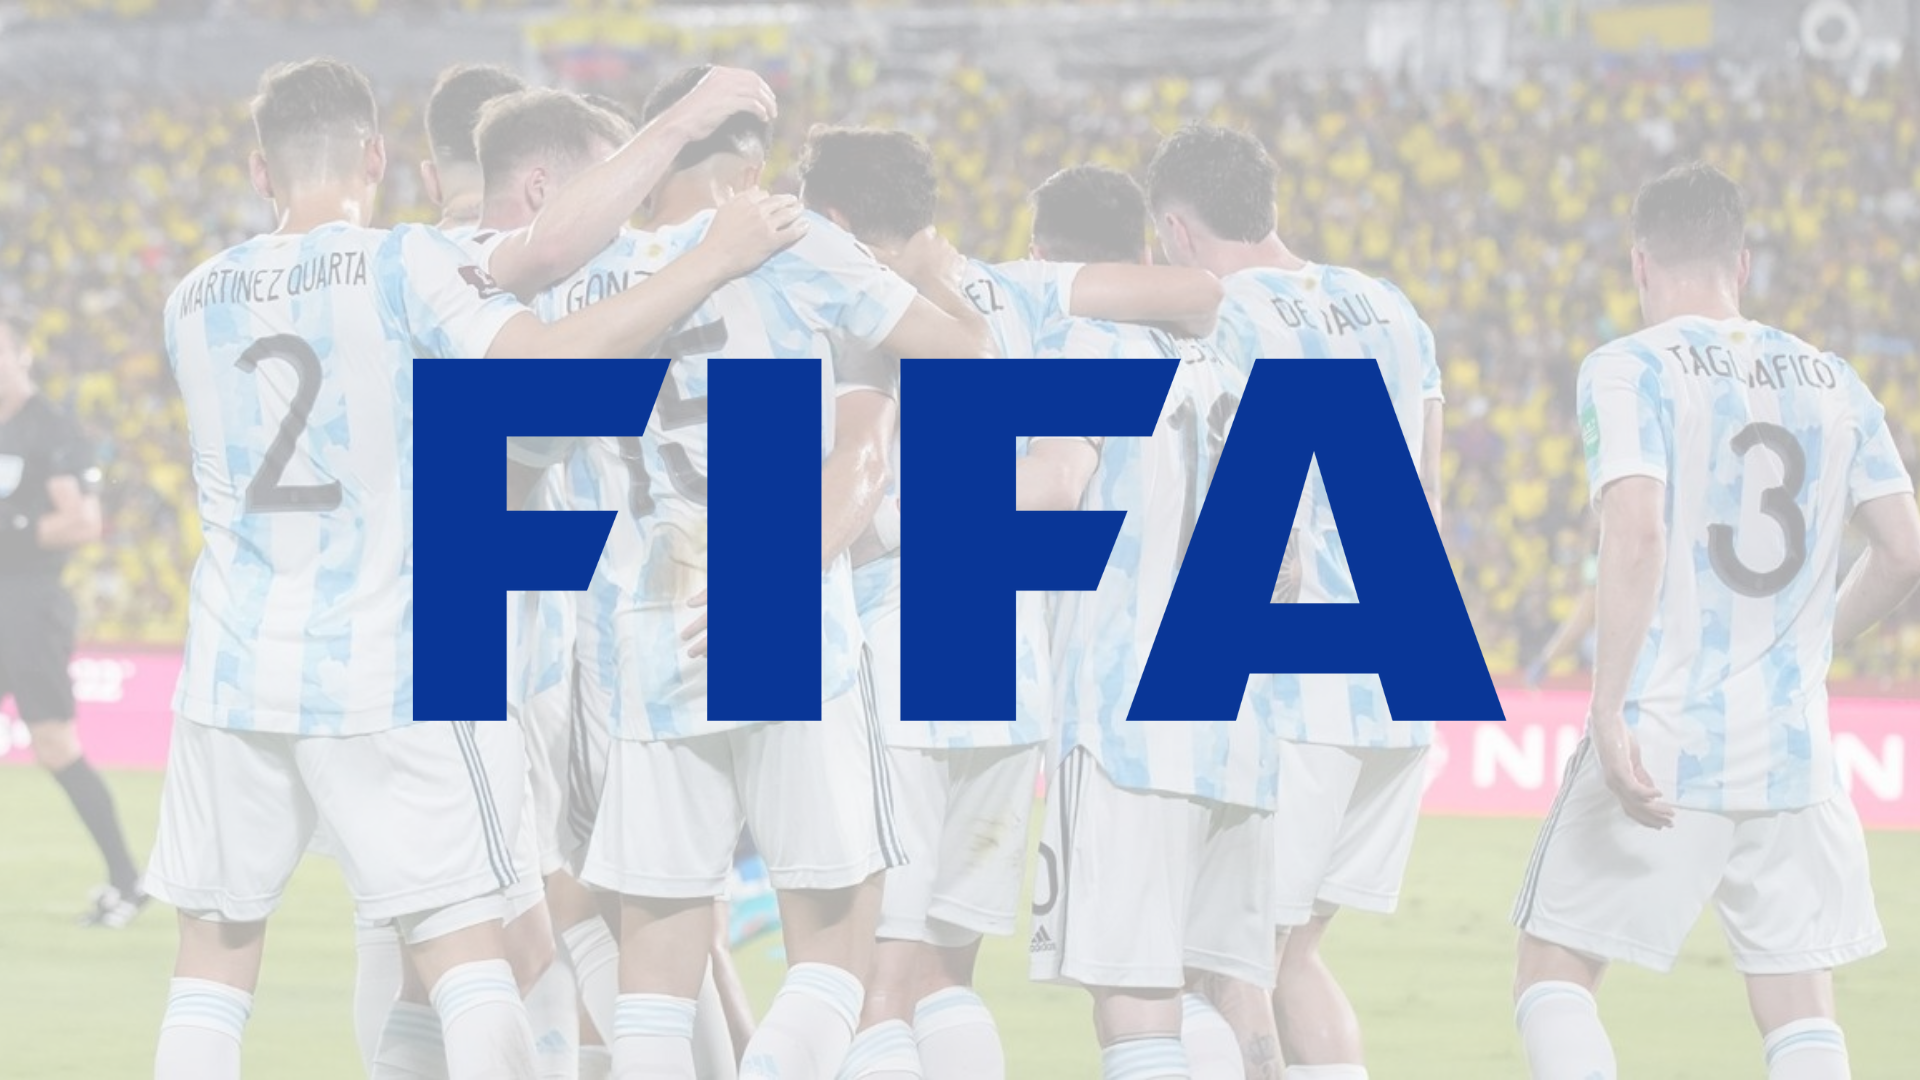 La agenda del combinado argentino ya cuenta con tres partidos importantísimos para ir entrando en calor para disputar el mundial.